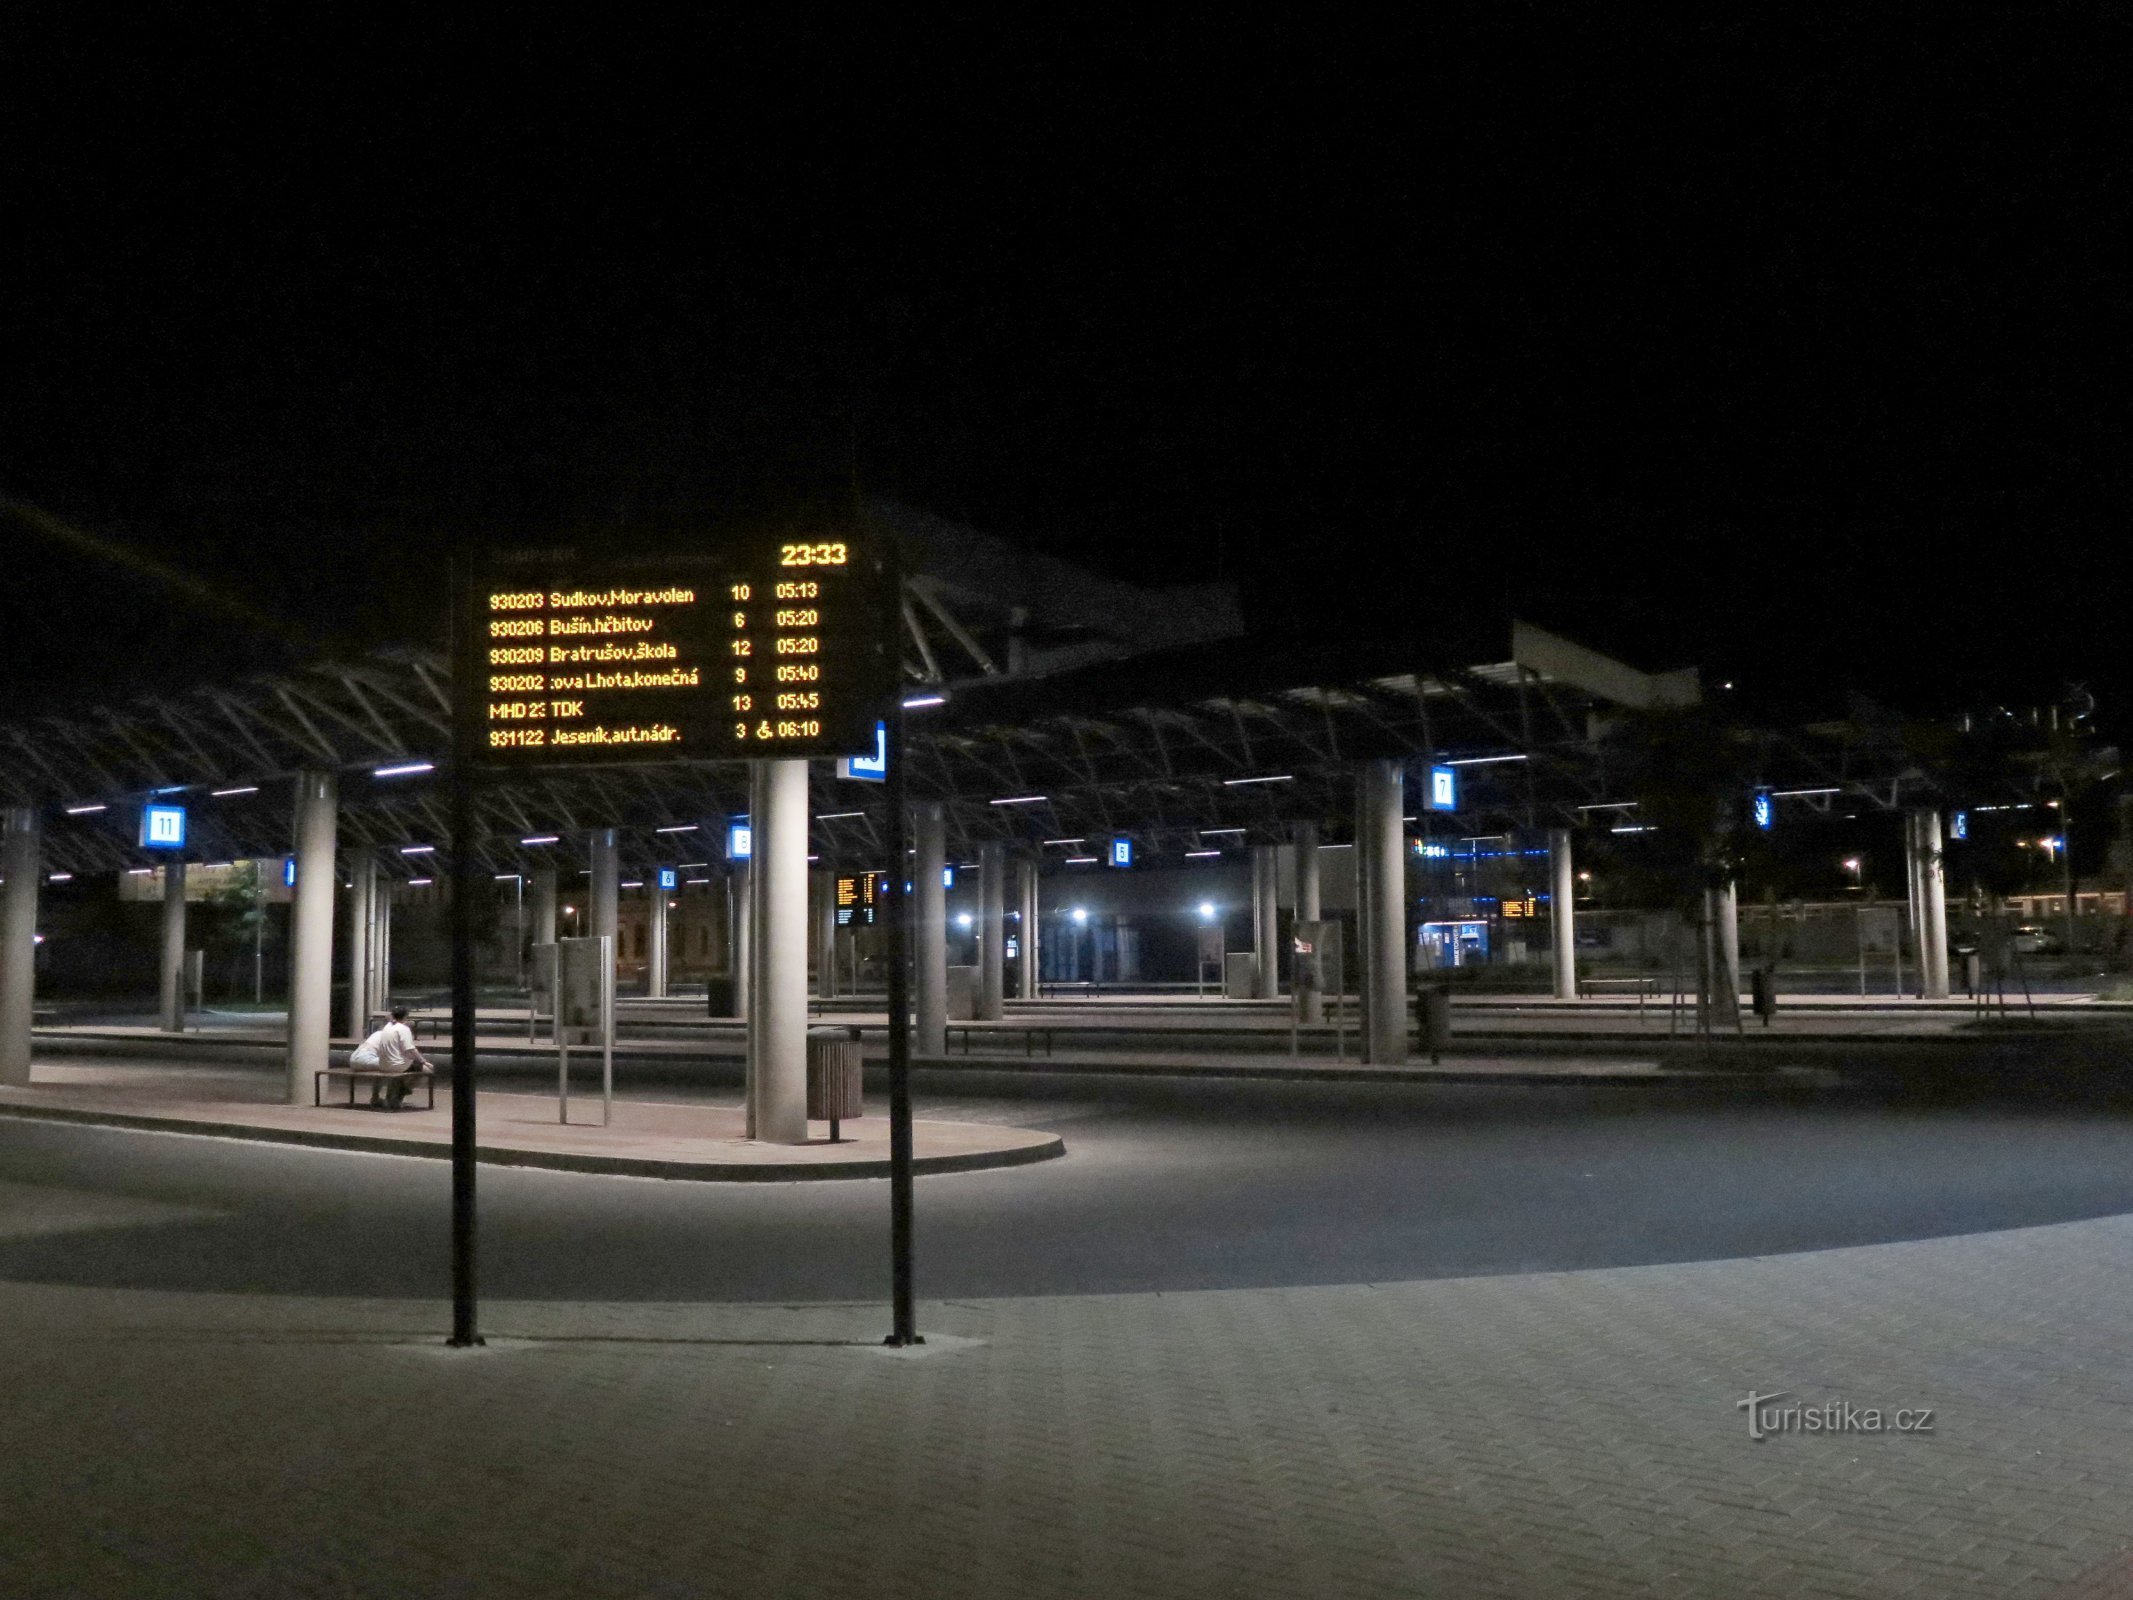 Šumperk – ny busstation